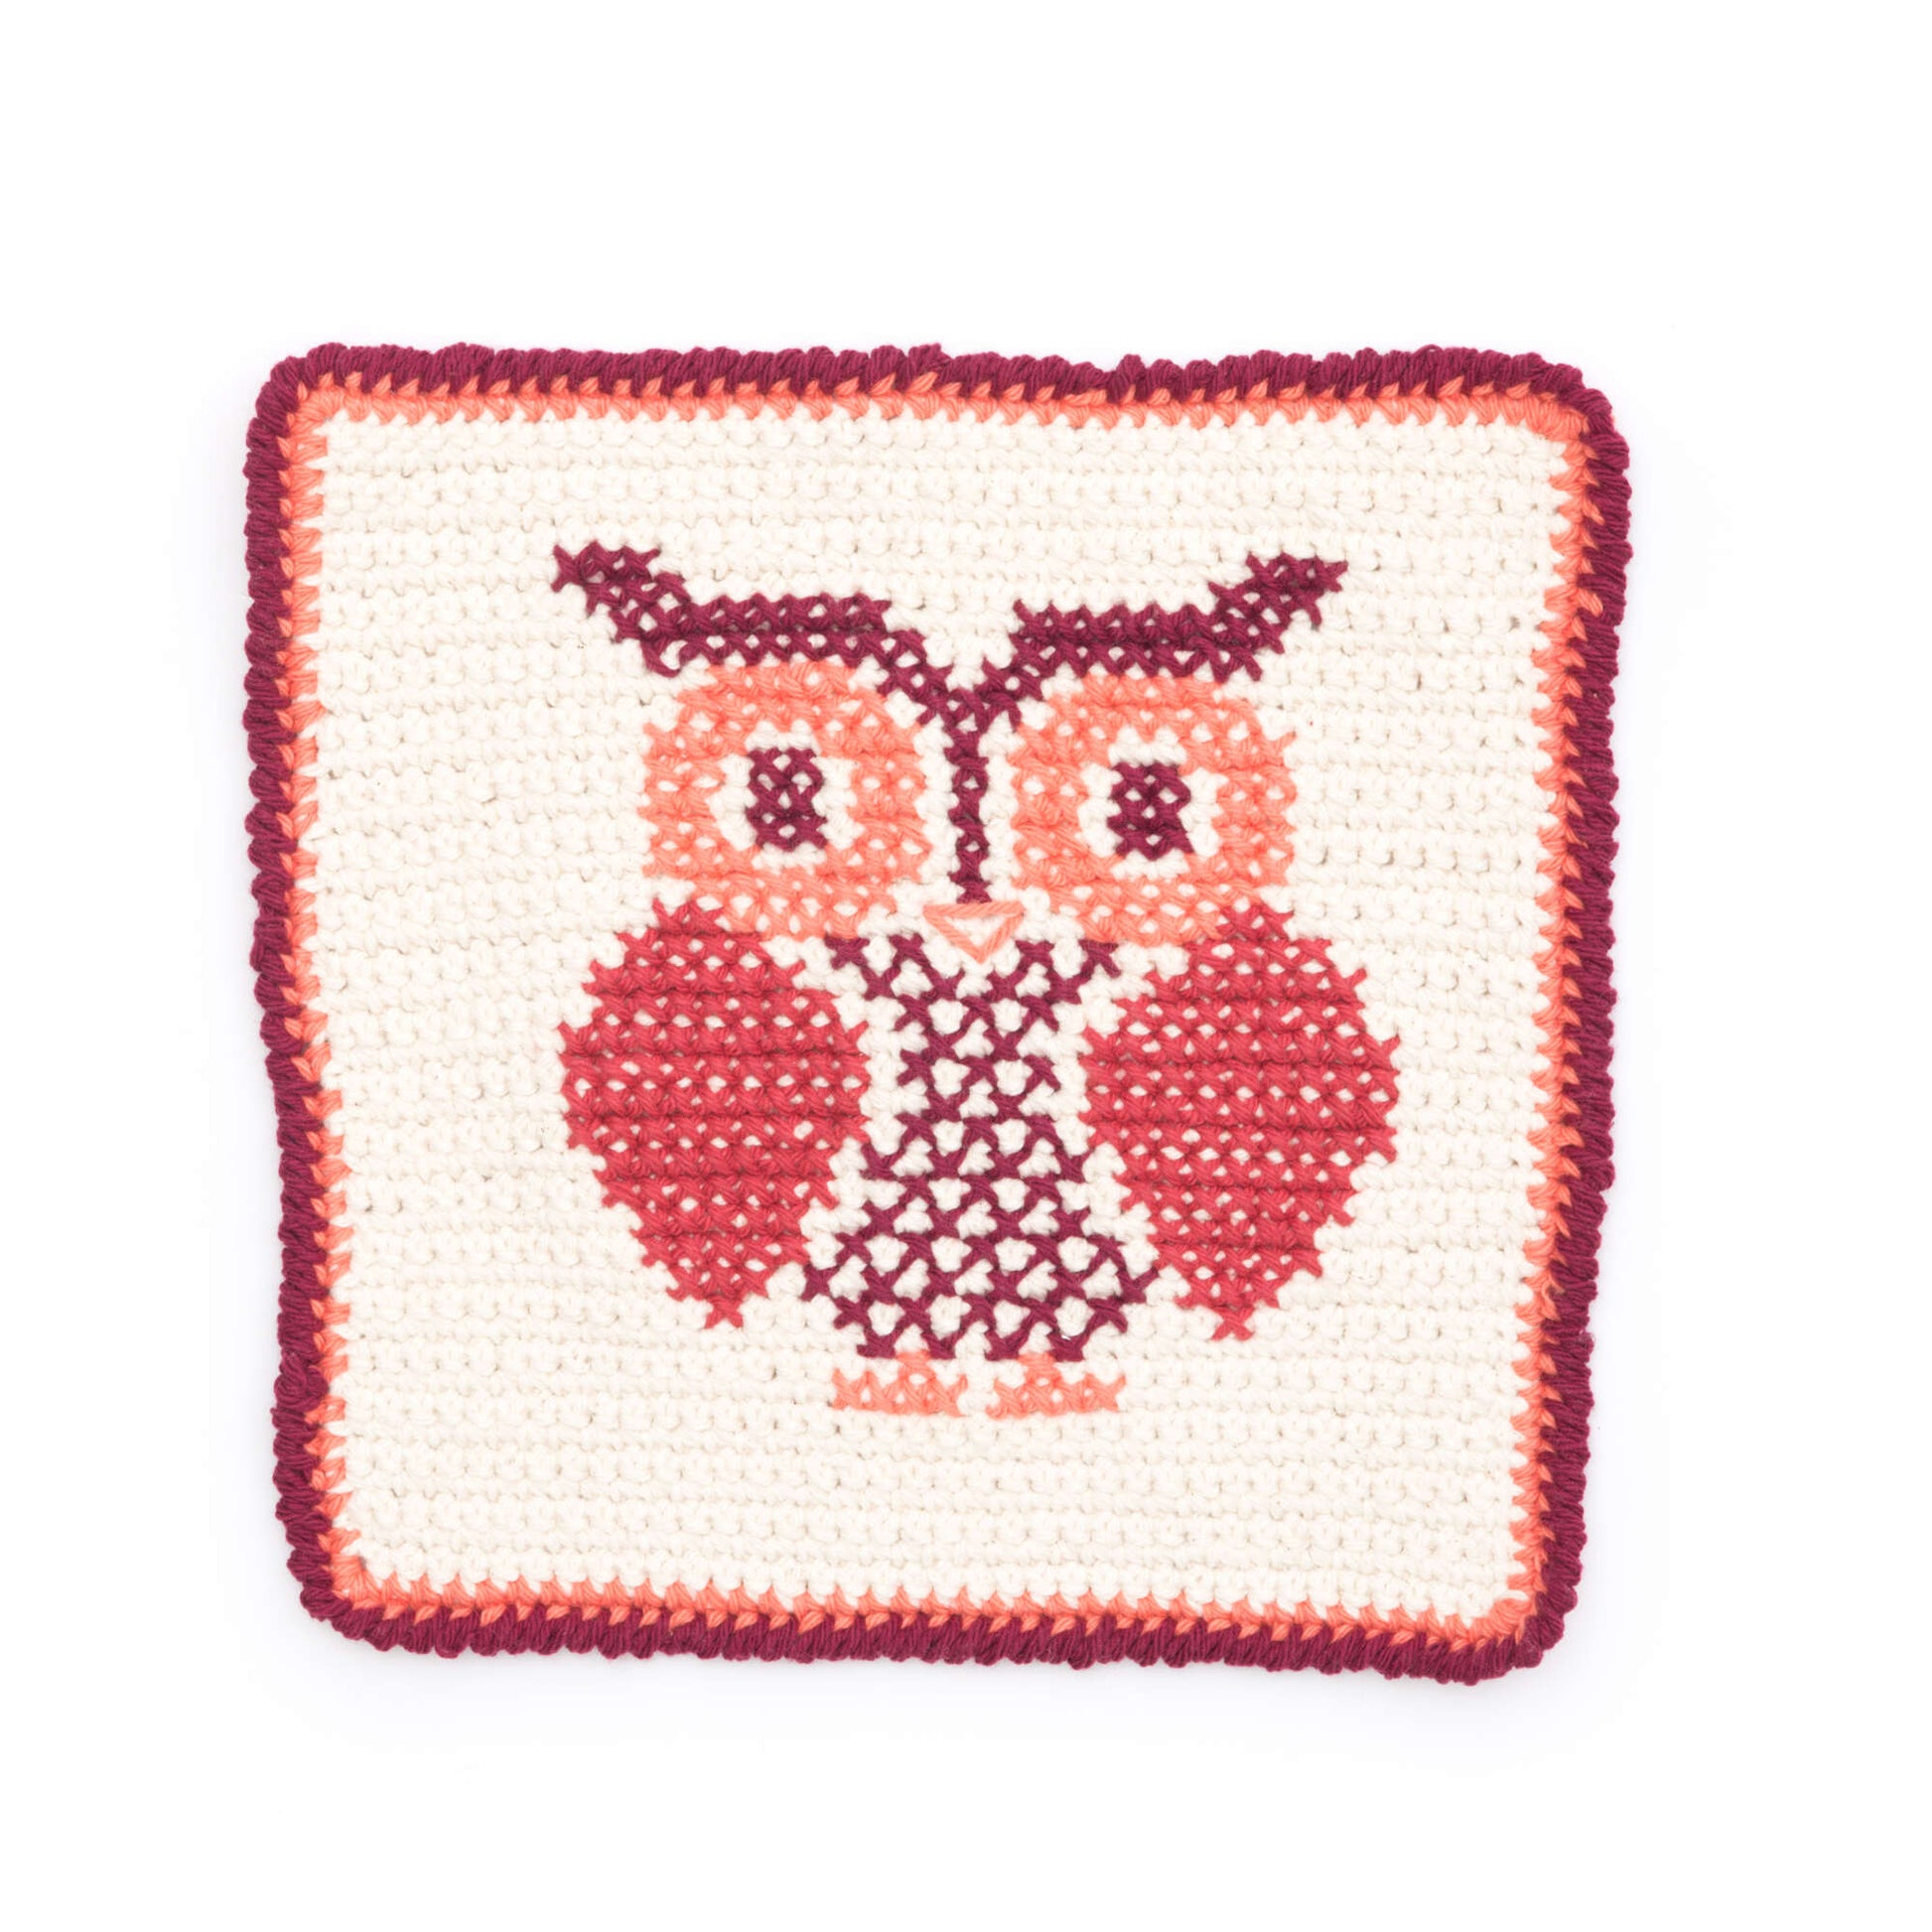 Free Lily Sugar'n Cream Owl Cross Stitch Dishcloth Crochet Pattern